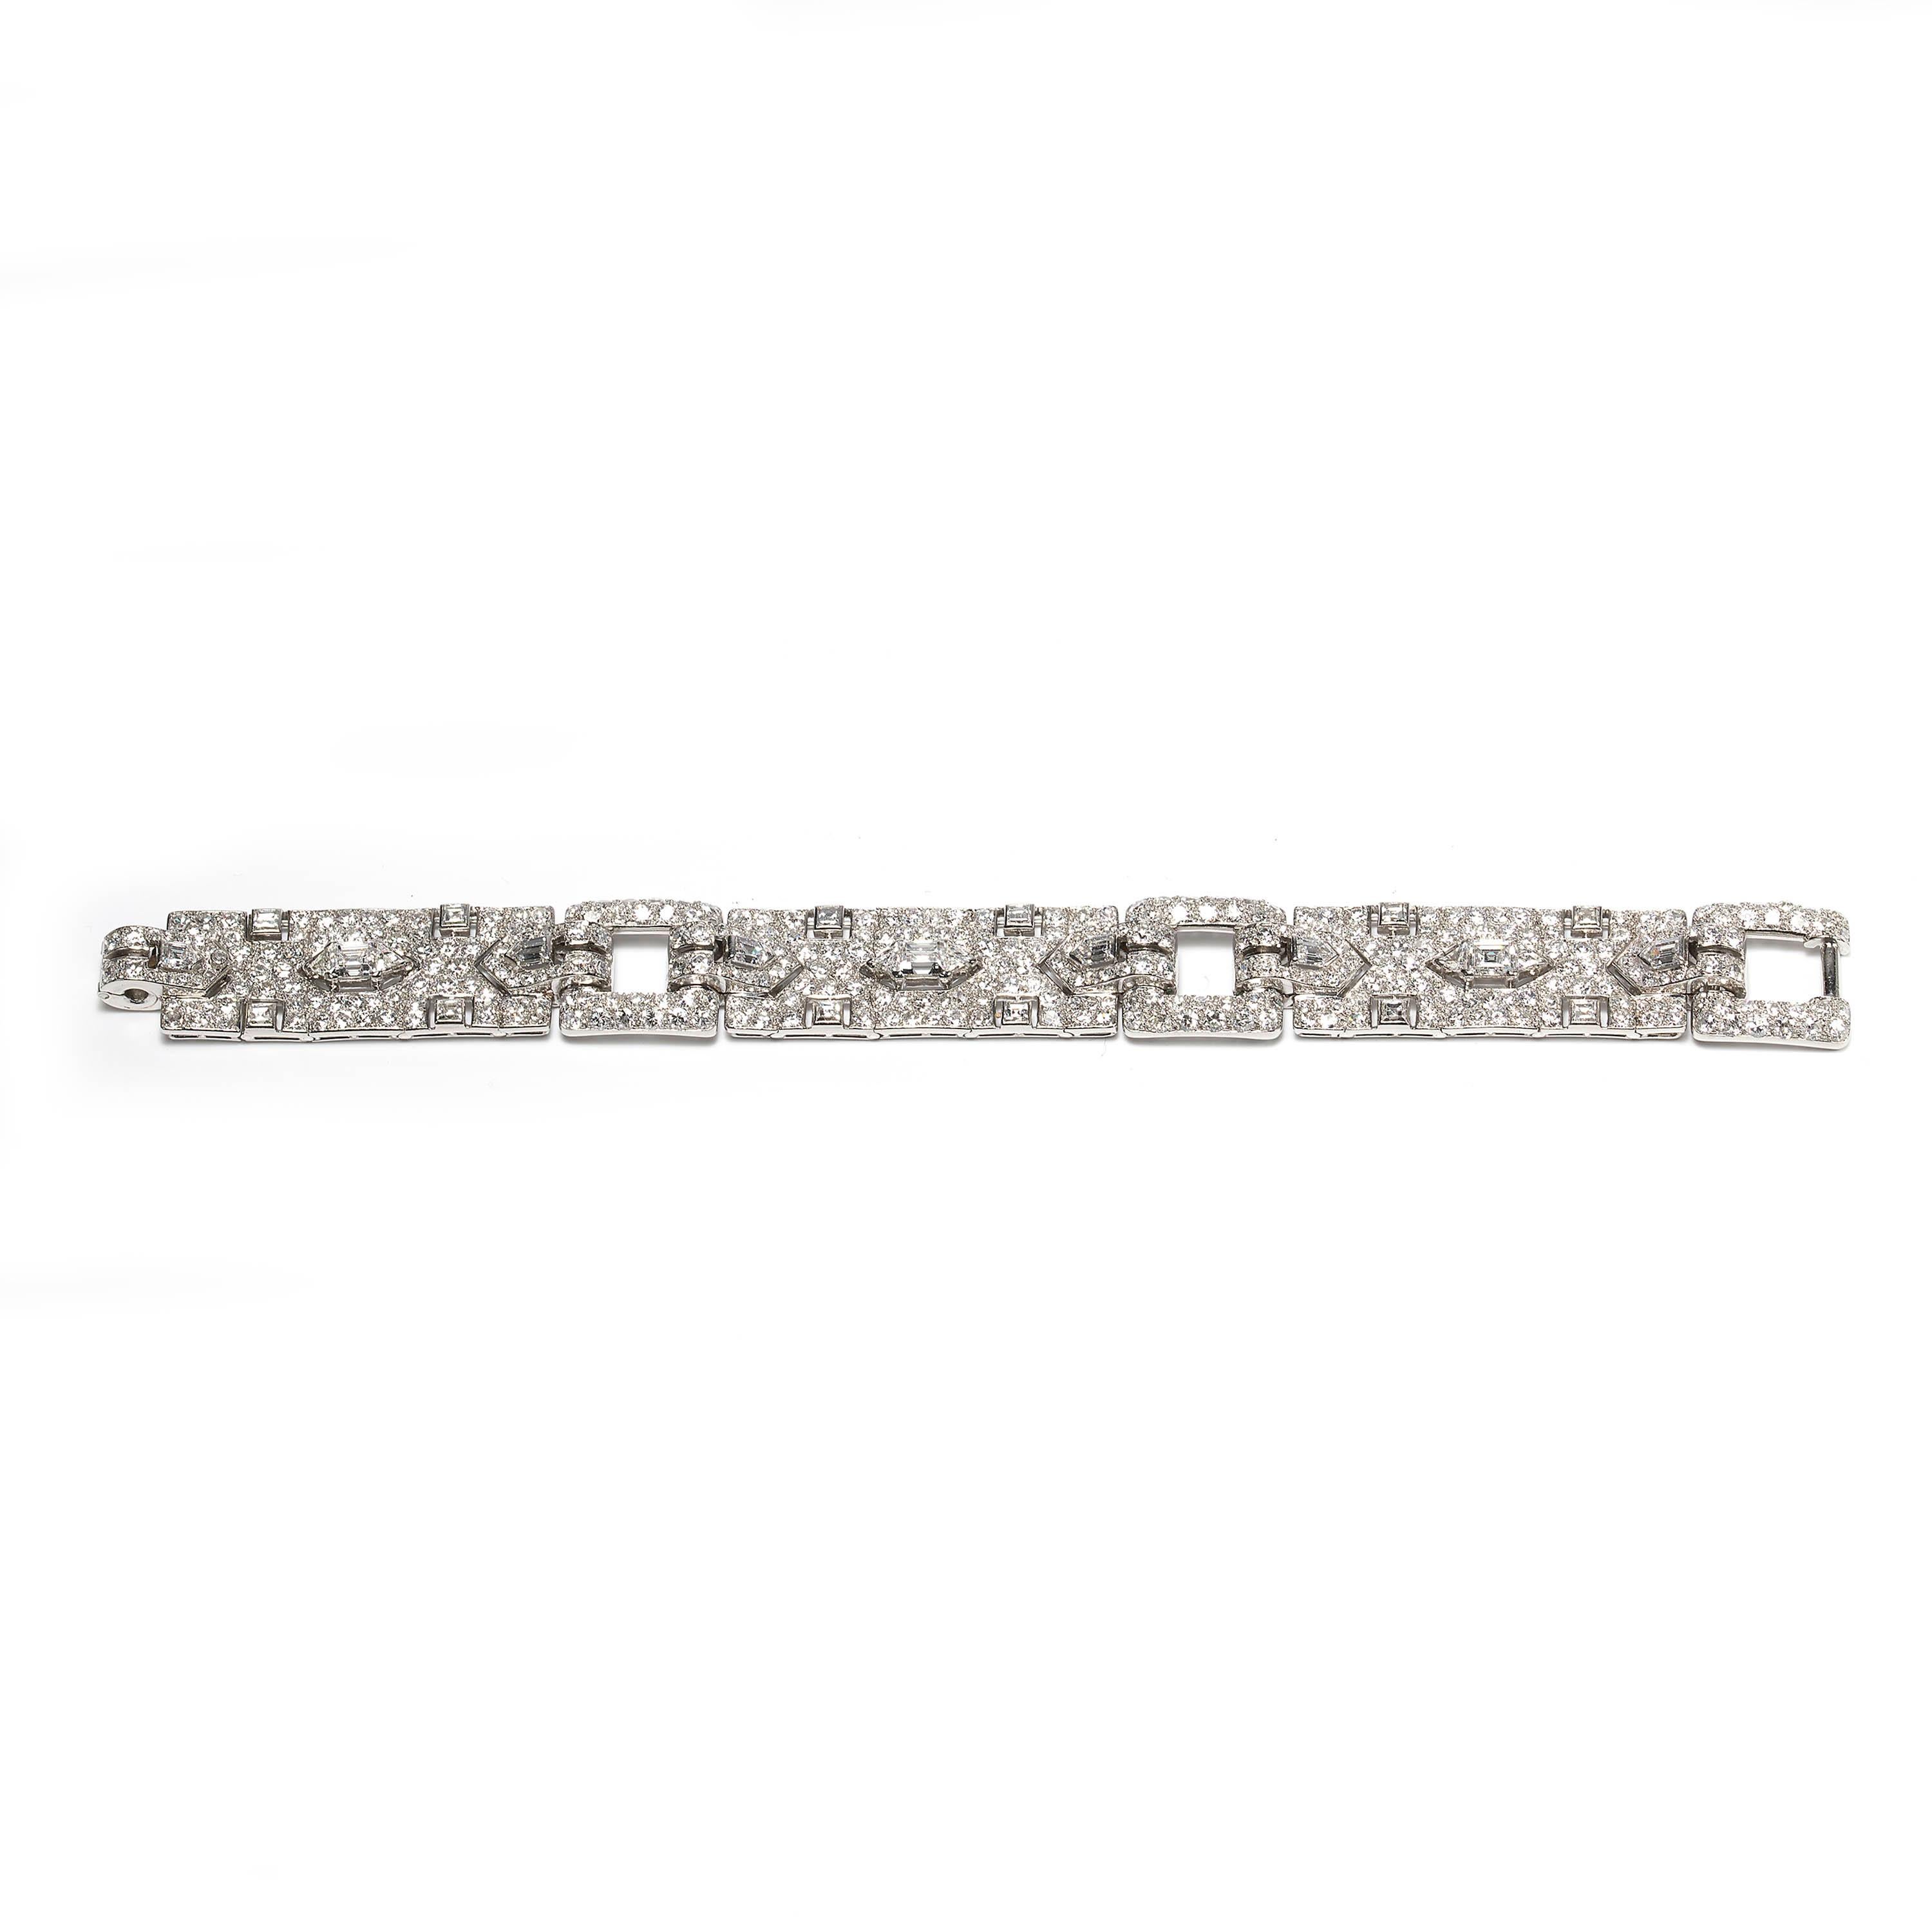 Ein Cartier-Armband im Vintage-Stil, bestehend aus drei Feldern, die jeweils mit einem zentralen Diamanten im Fallenschliff besetzt sind, der von dreieckigen Diamanten und Diamanten im Phantasieschliff flankiert wird, mit Brillanten im